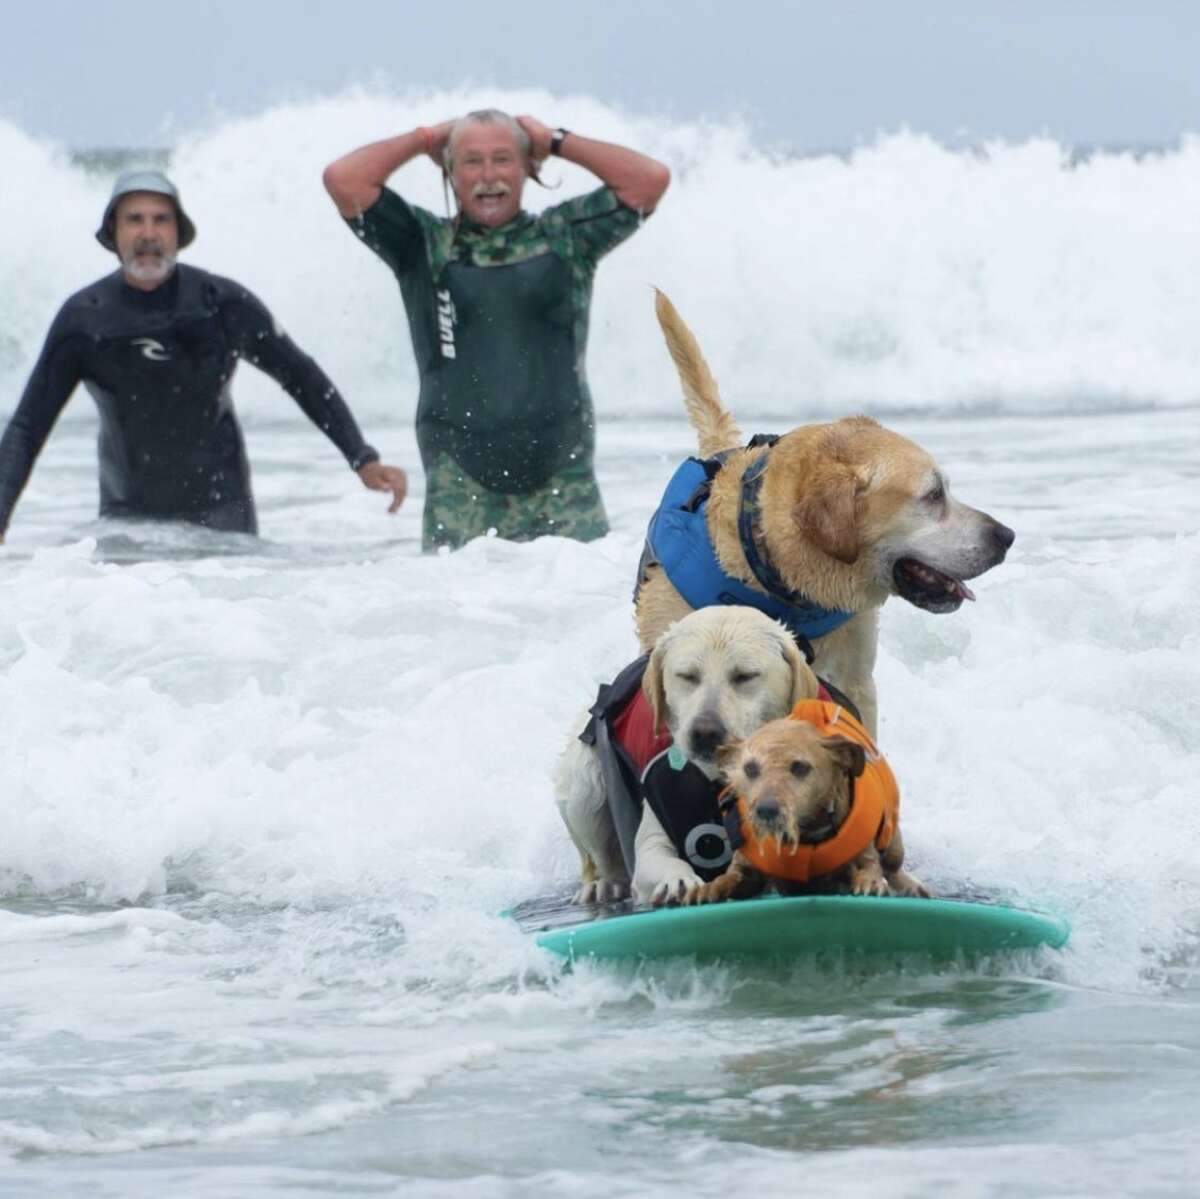 @findinghalffull capturó a perros surfistas que participaban en el Campeonato Mundial de Surf de Perros en Pacifica.